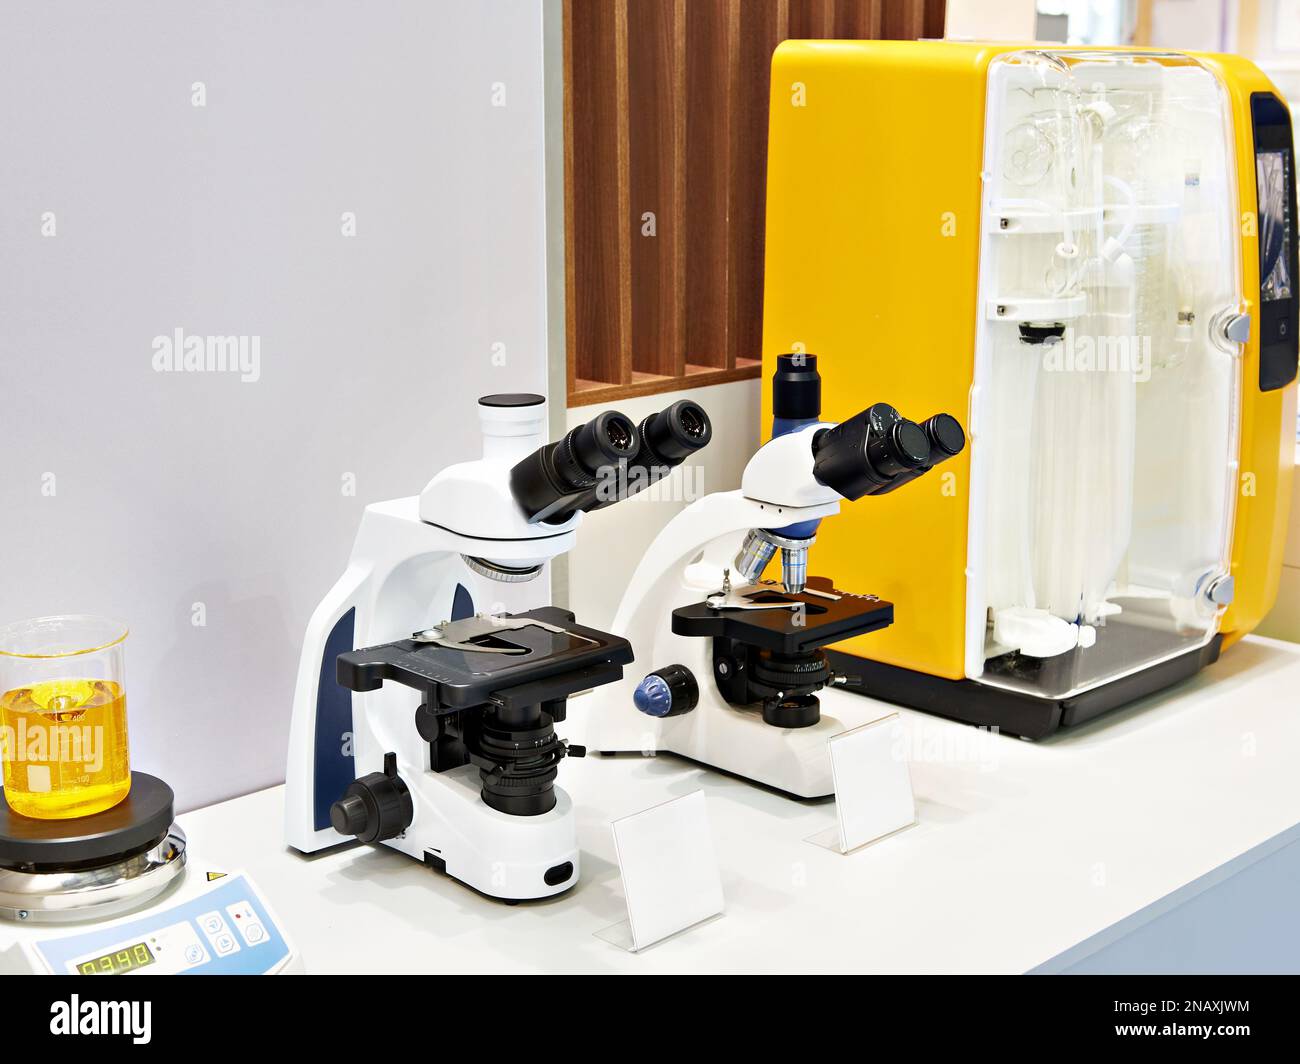 Microscopios estereoscópicos en la exposición de equipos químicos Foto de stock